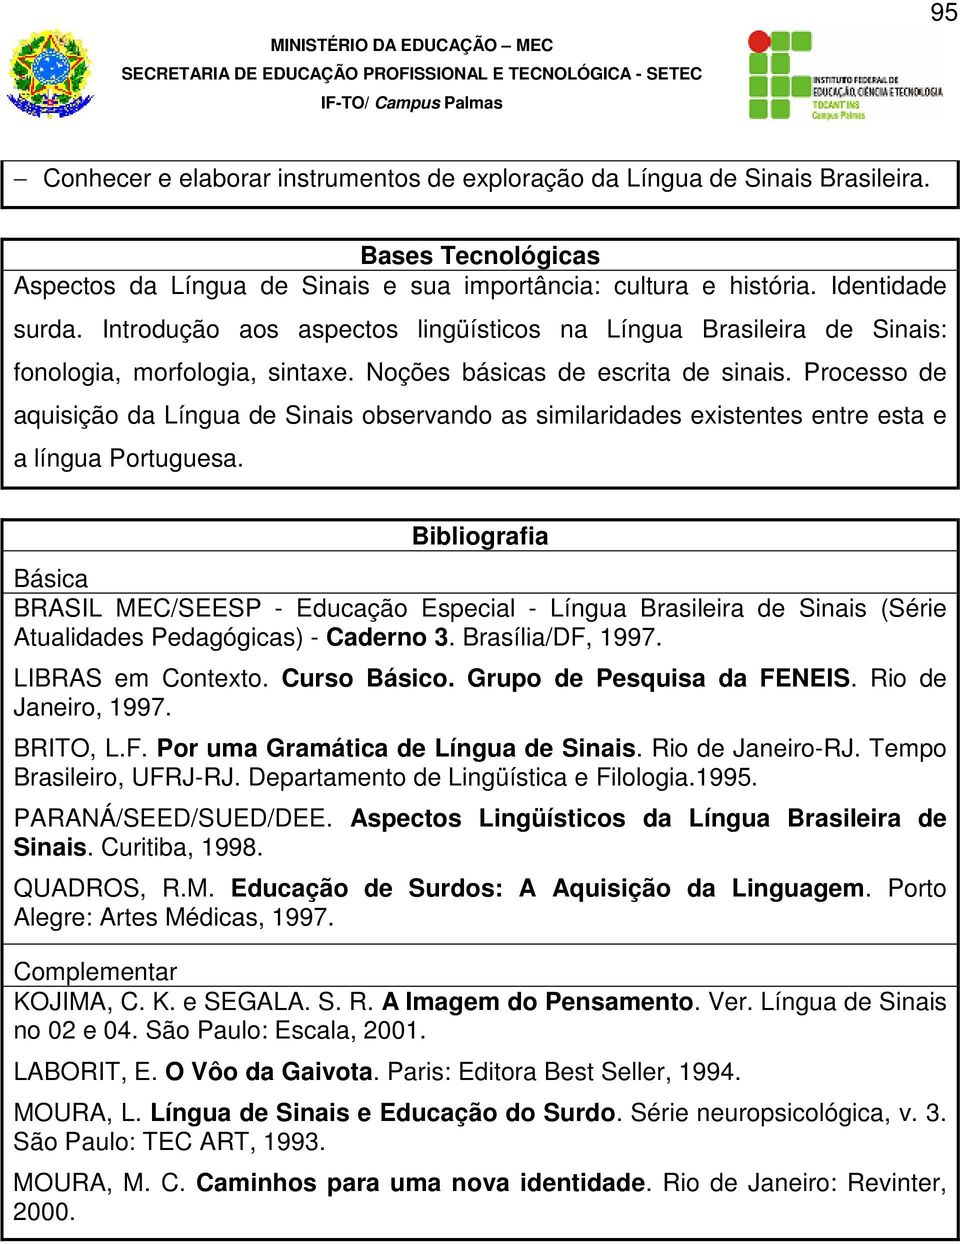 Processo de aquisição da Língua de Sinais observando as similaridades existentes entre esta e a língua Portuguesa.